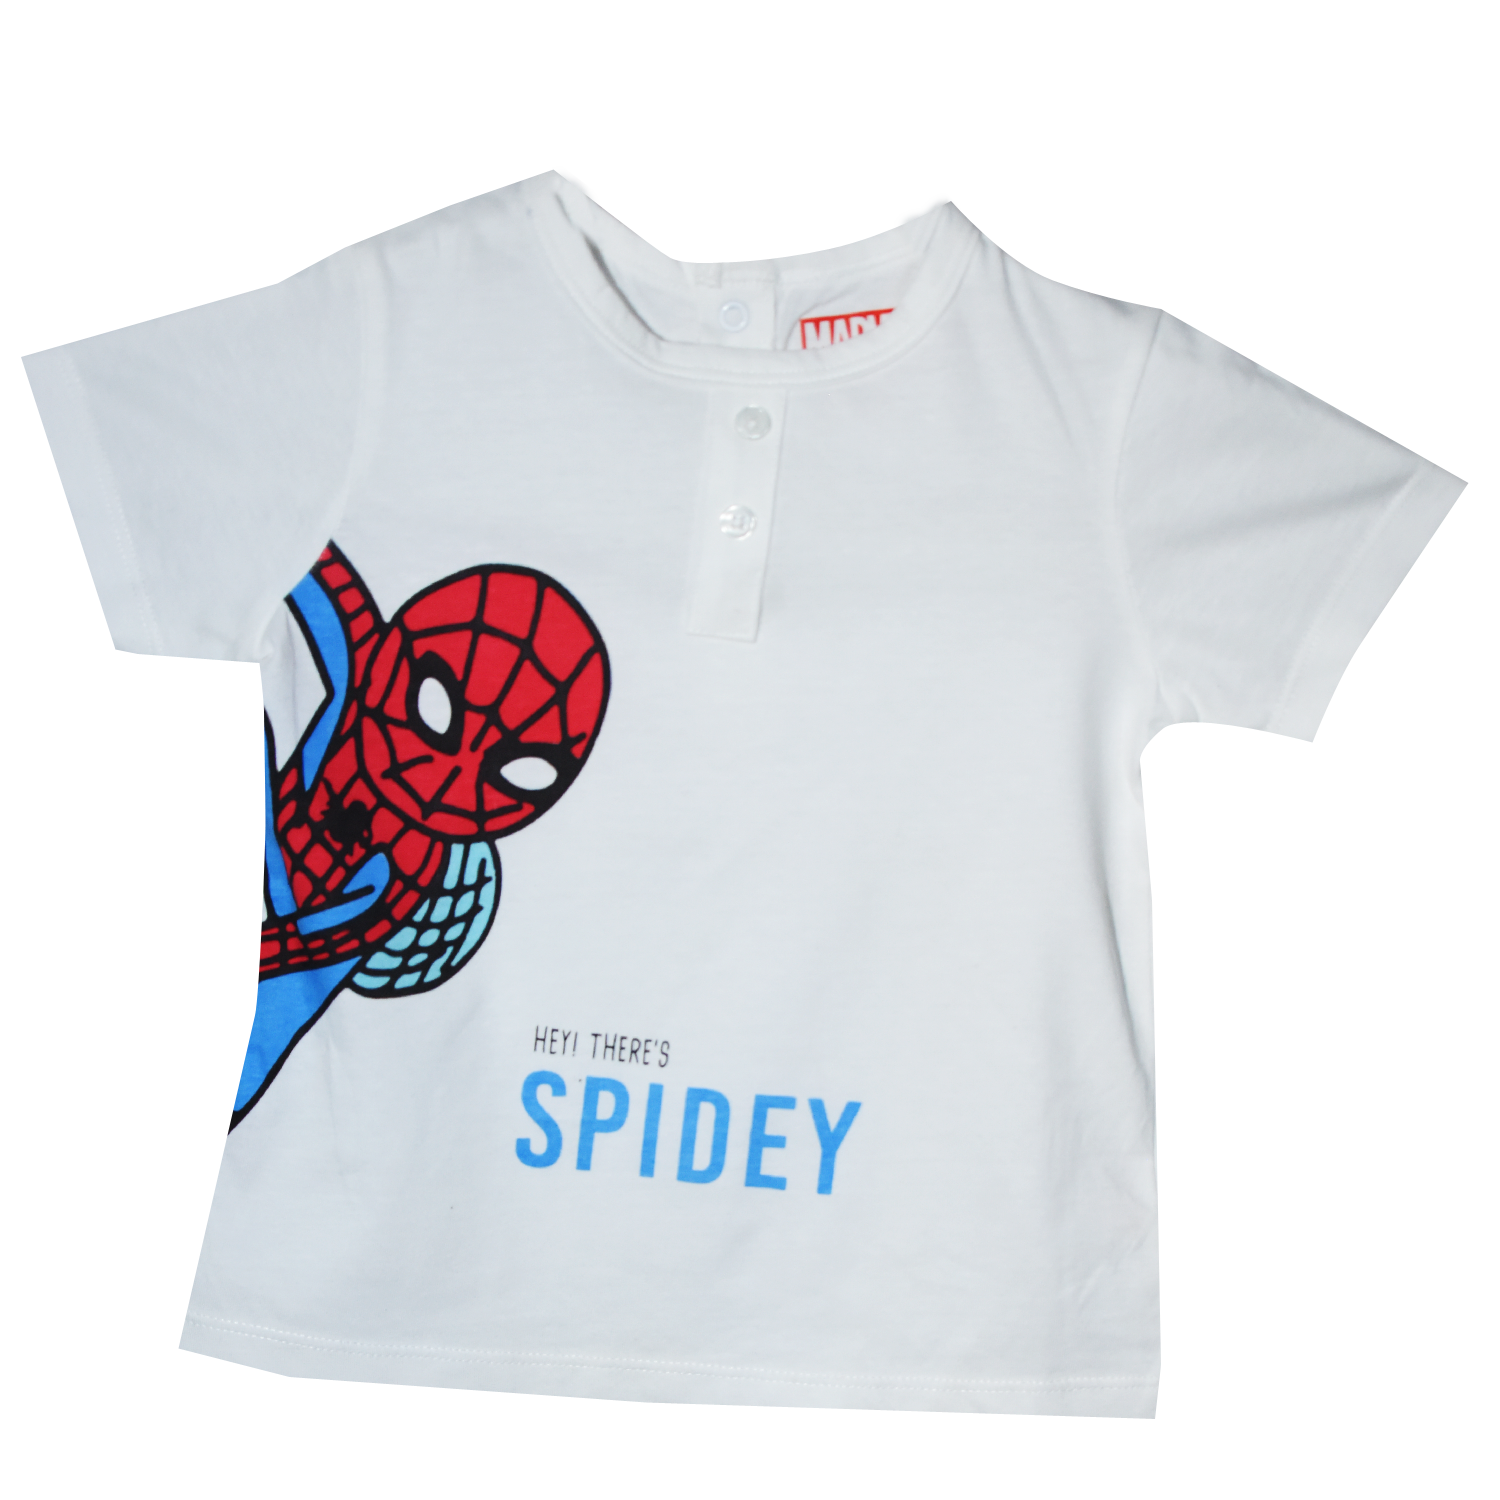 Spider Man Boys / kids set